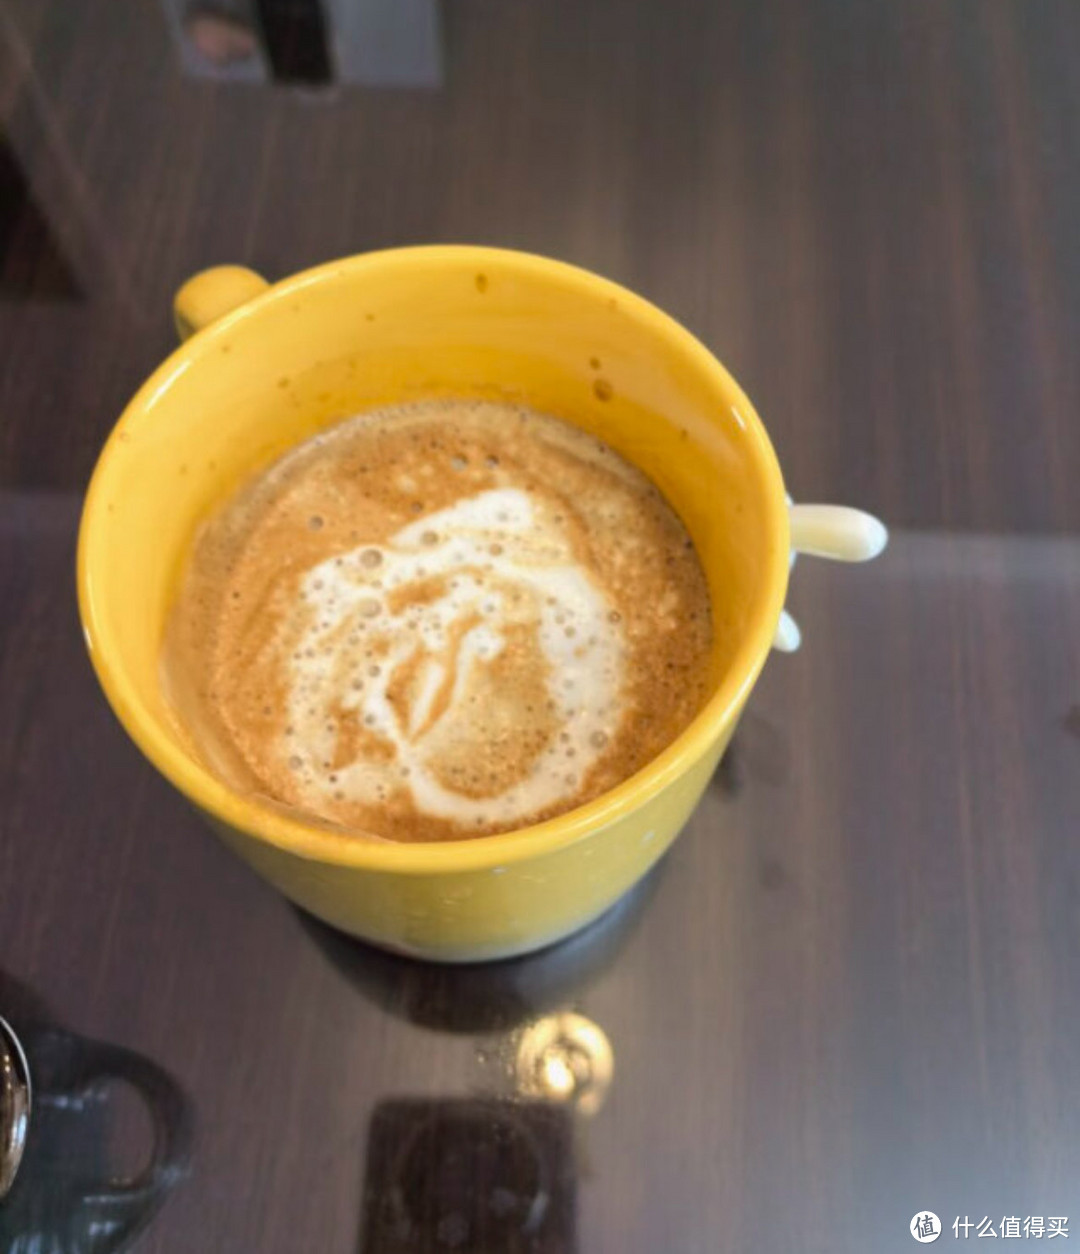 雪特朗咖啡机让你成为咖啡大师。